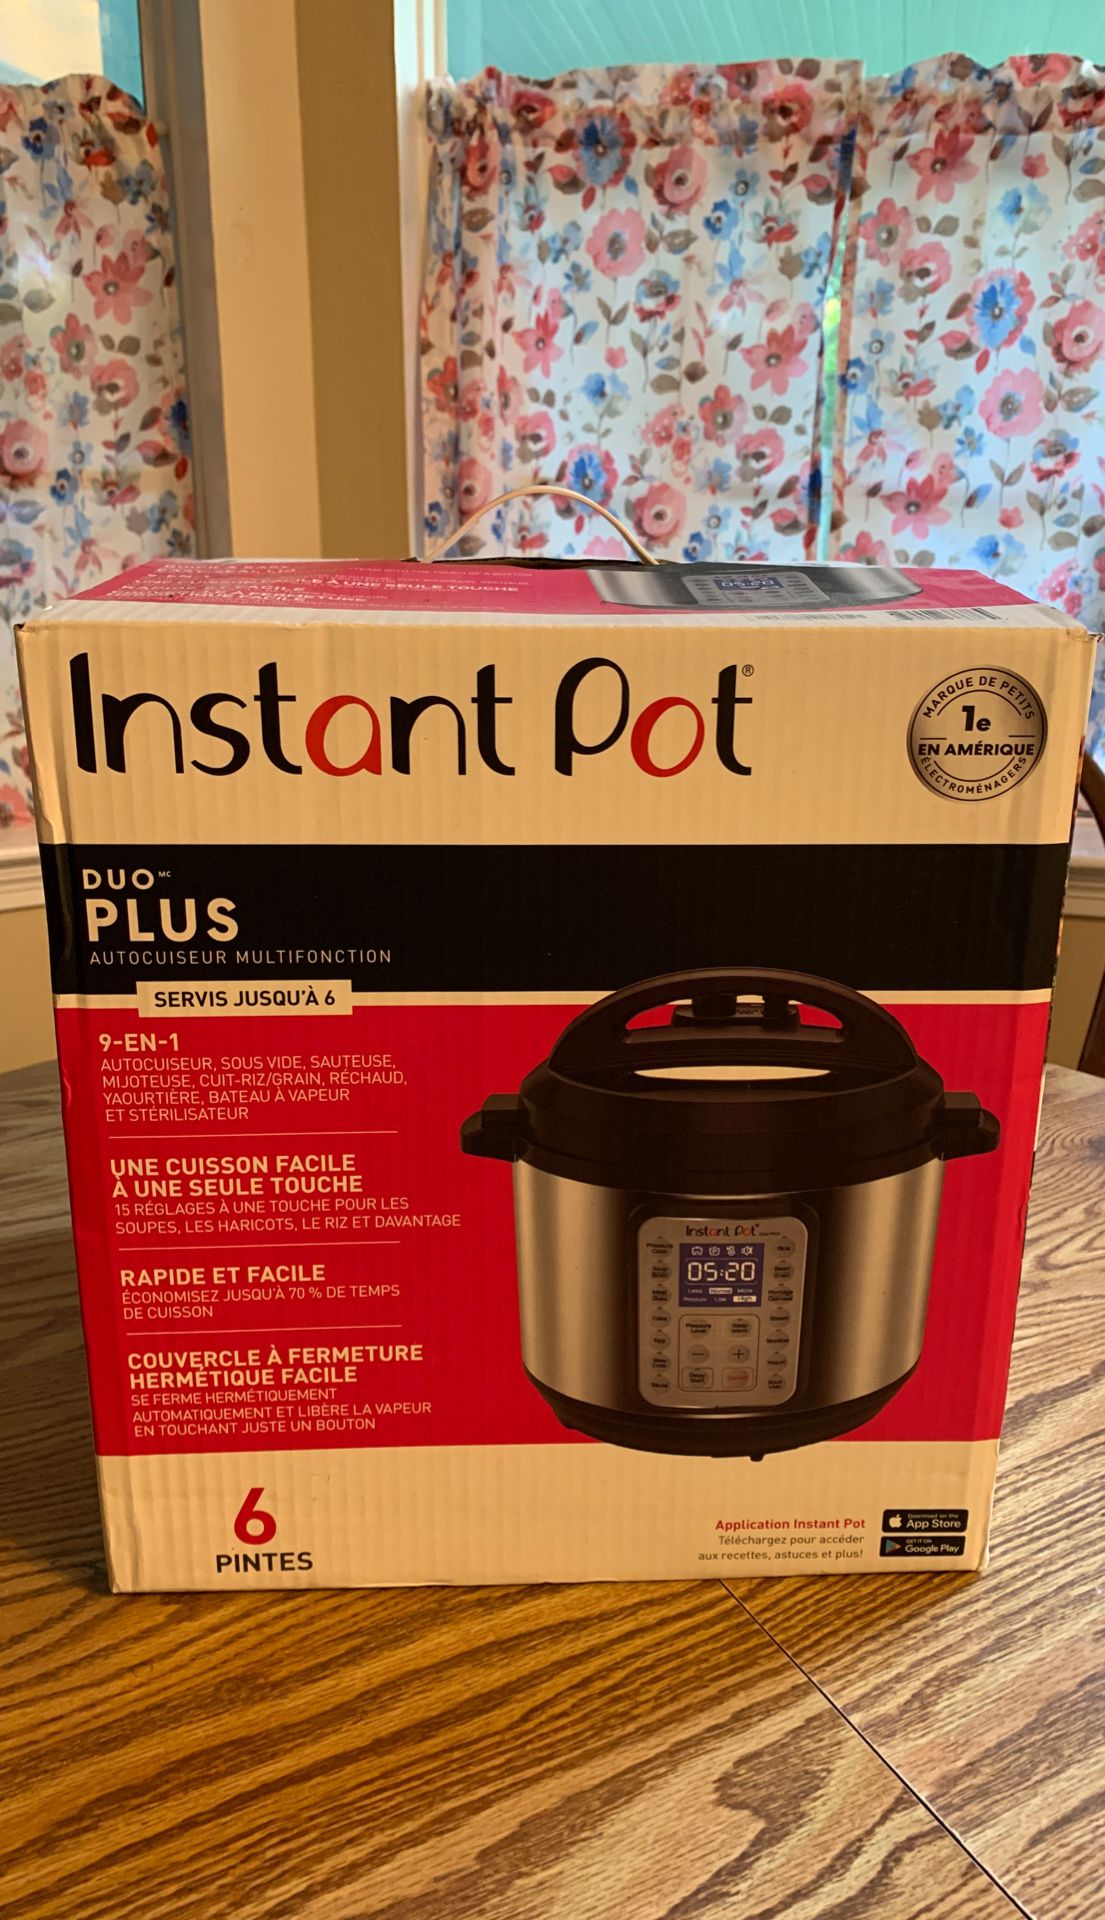 Instant Pot Duo Plus 9 in 1